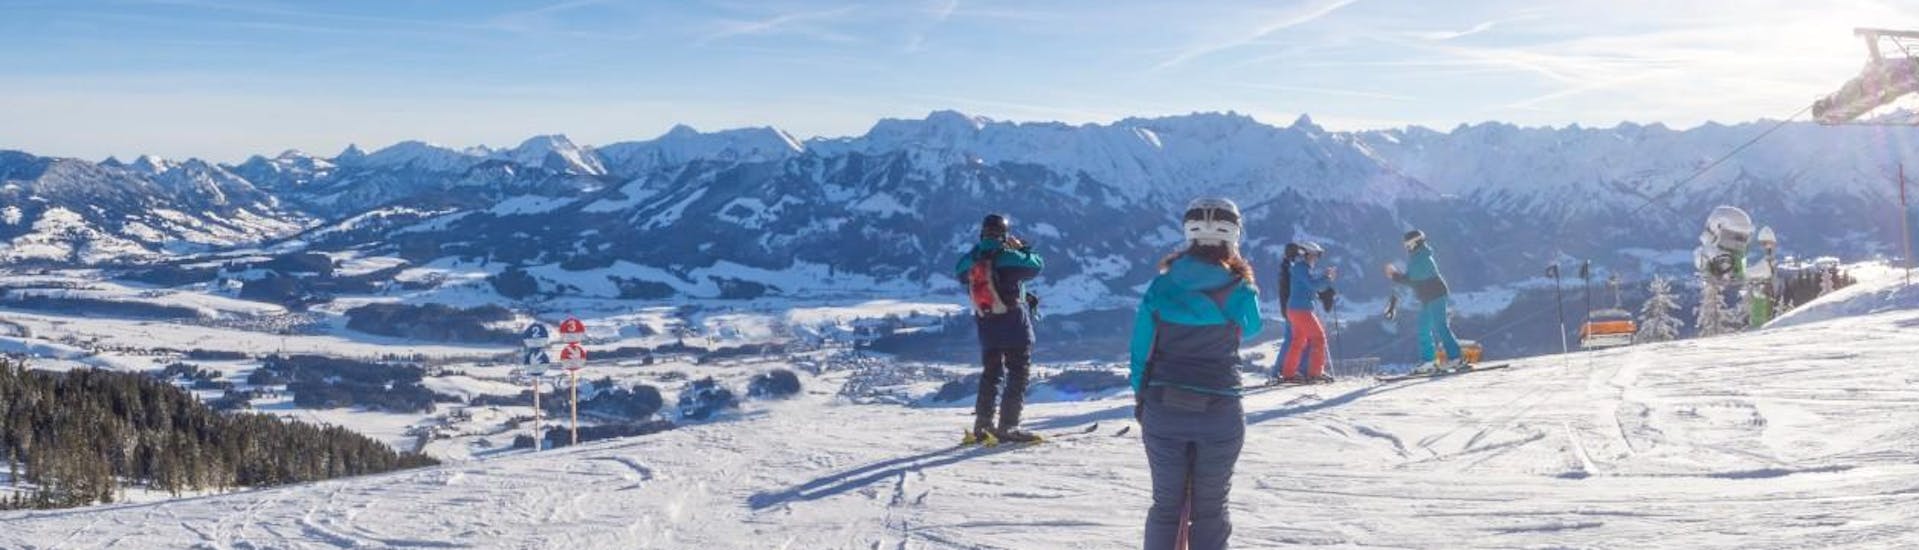 Eine Gruppe Skifahrer steht an der Spitze des Bergs und blickt über das bayrische Skigebiet Bolsterlang, wo örtliche Skischulen Skikurse für diejenigen anbieten, die das Skifahren lernen möchten.